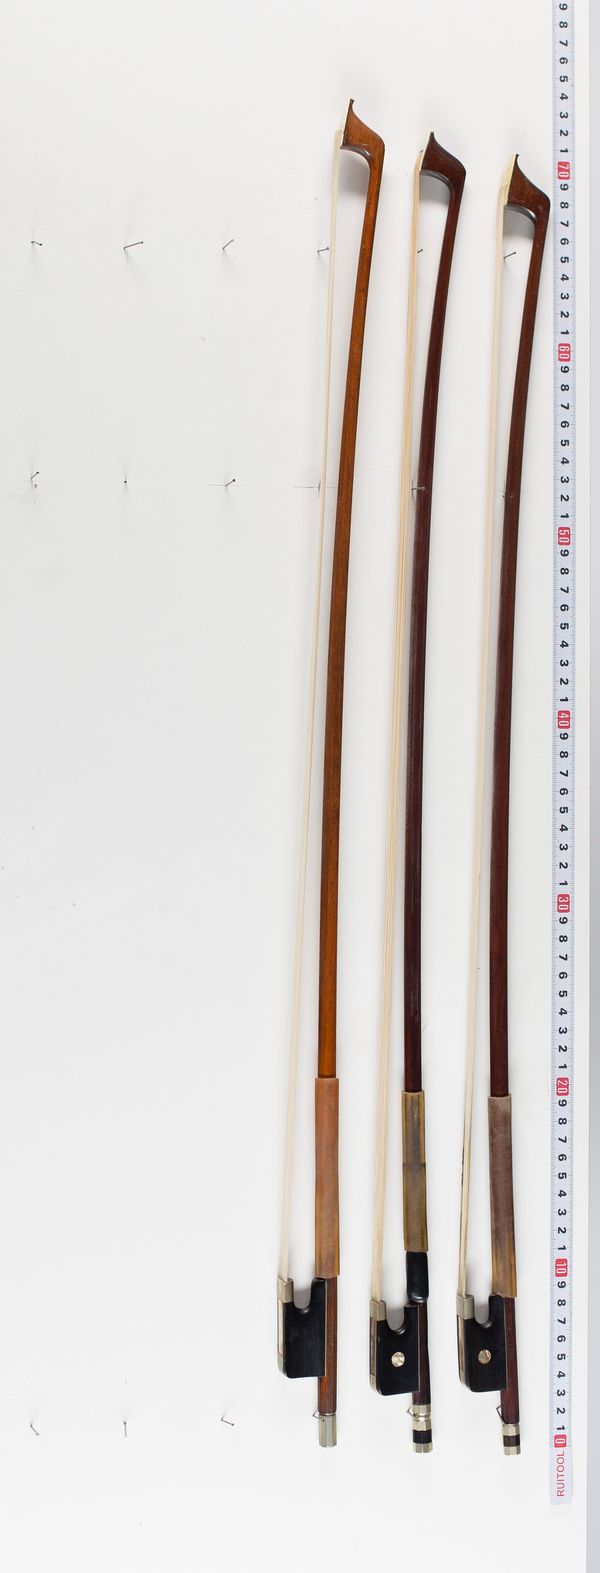 Three cello bows, varying sizes